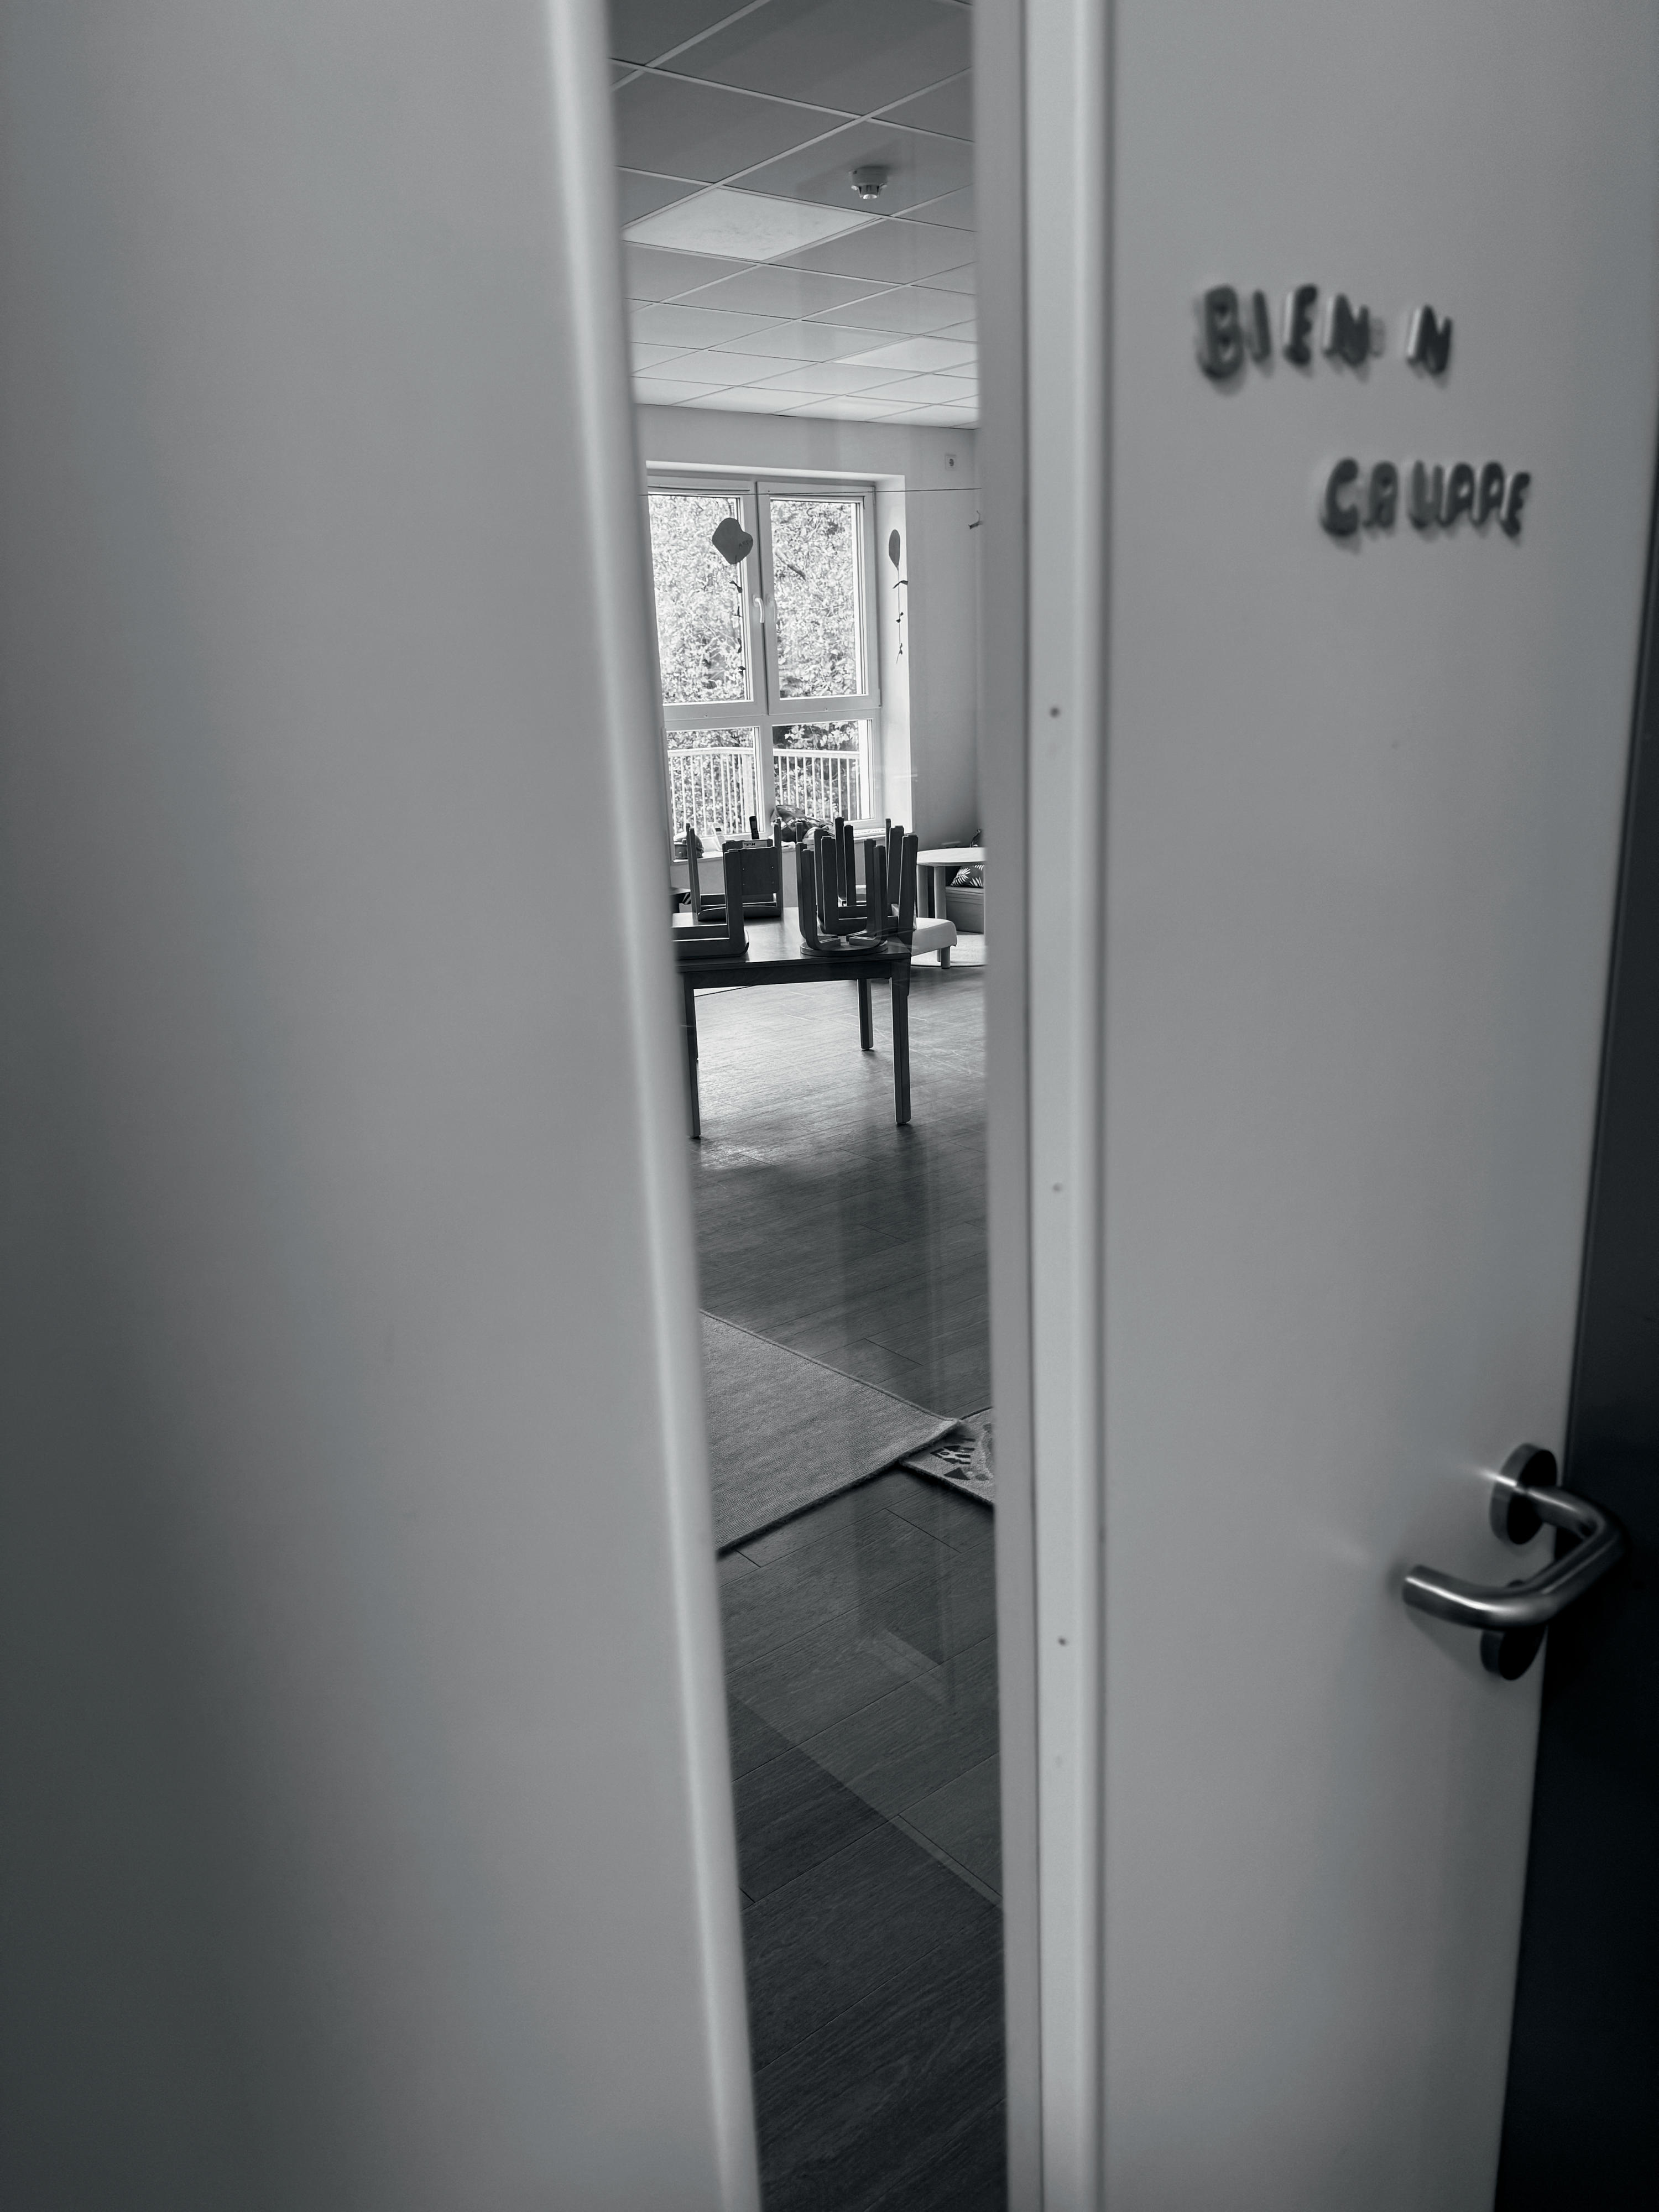 Schwarz-weiß-Bild einer einen Spalt geöffneten Tür zu einem Kita-Raum mit der beschädigten Aufschrift „BIEN N GRUPPE“.